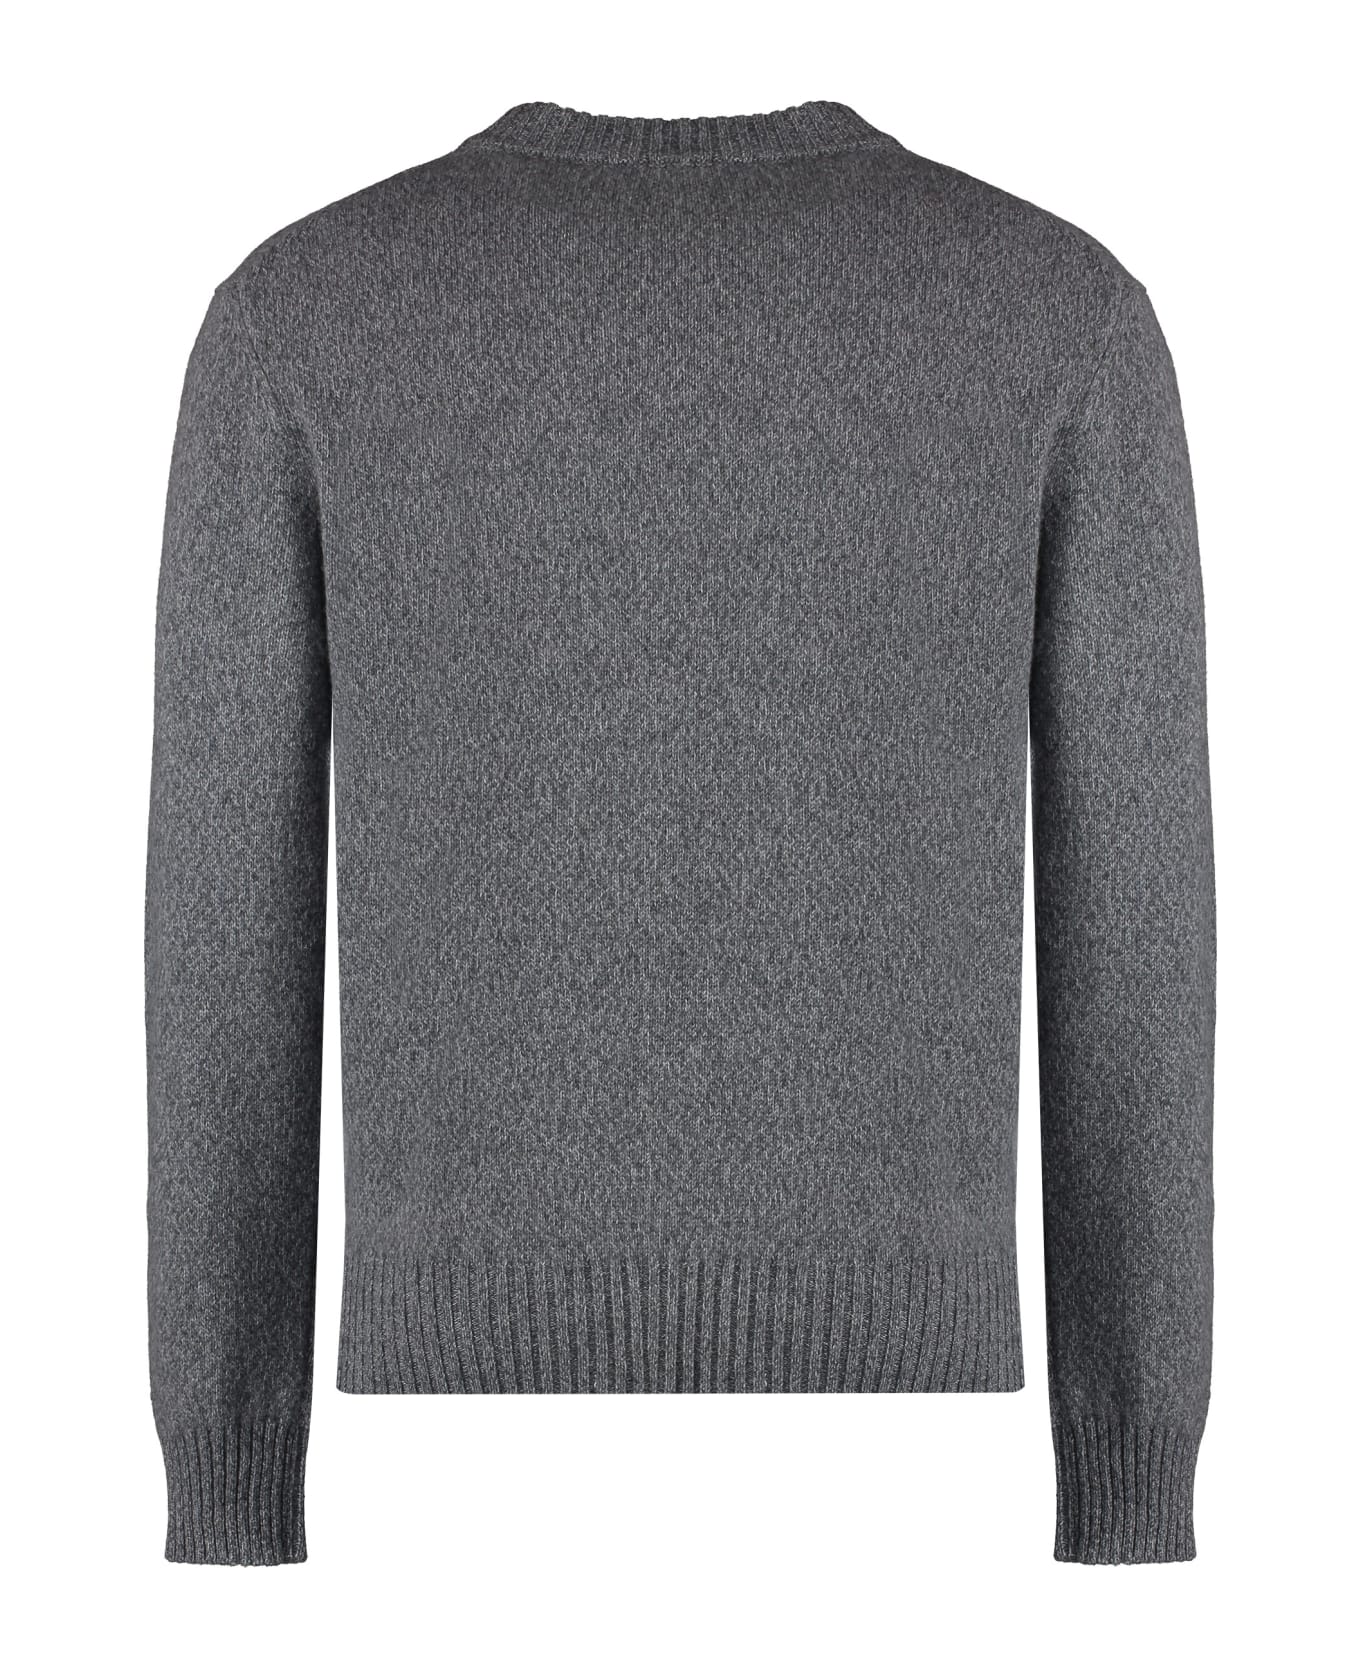 Ami Alexandre Mattiussi Crew-neck Cashmere Sweater - grey